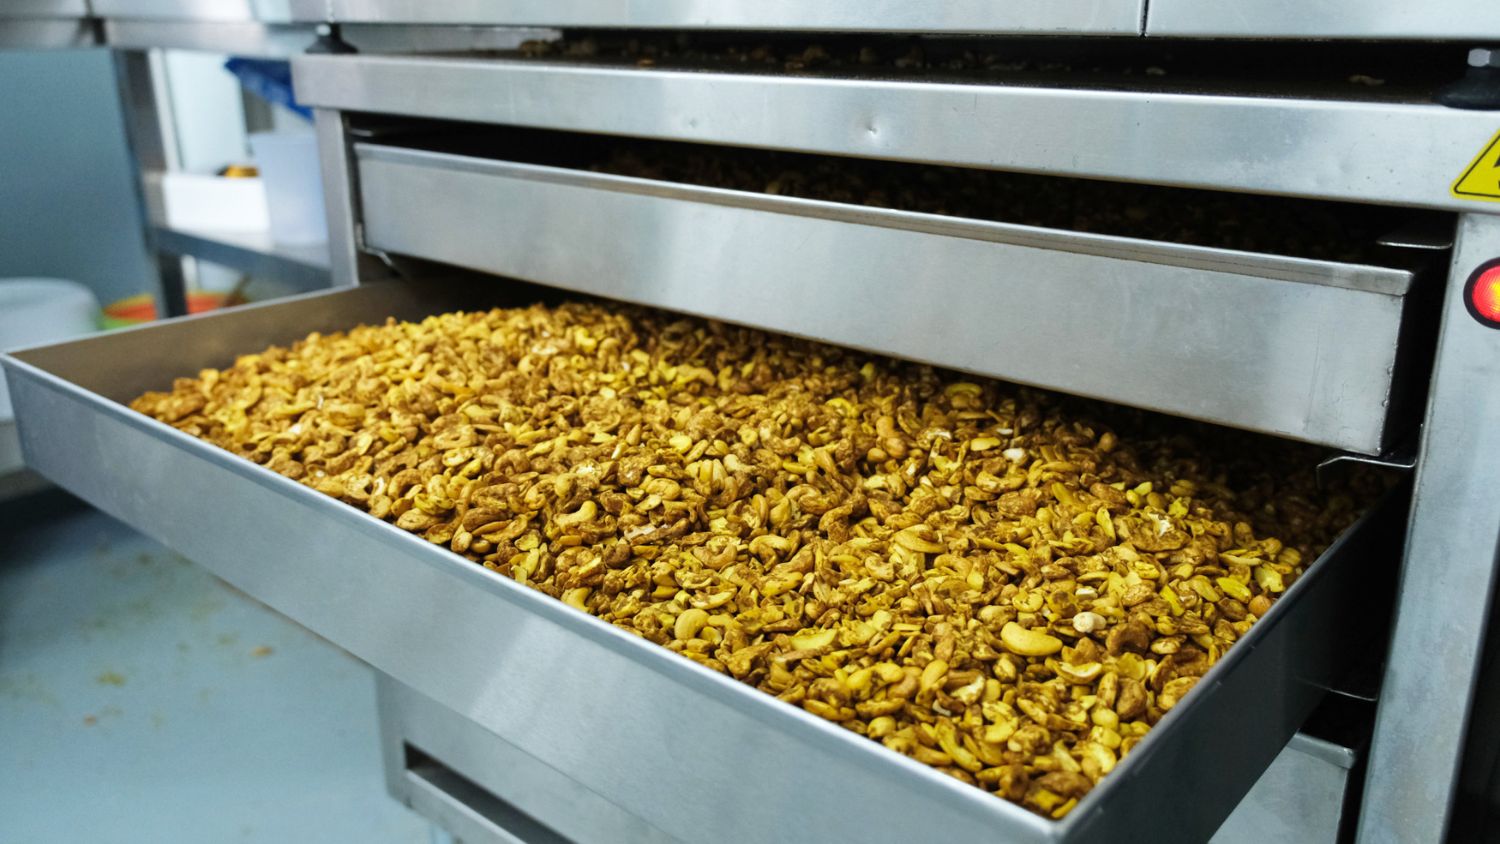 TARABAO: Bio Nüsse und Snacks aus eigener Herstellung, transparent und nachvollziehbar